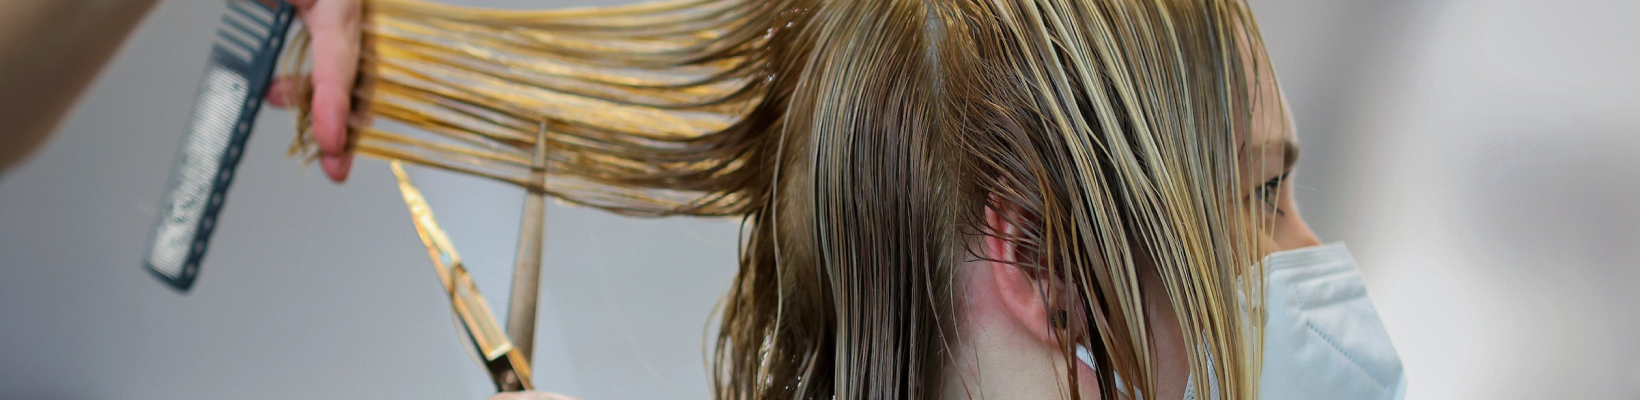 Стрижка способствует укреплению волос?